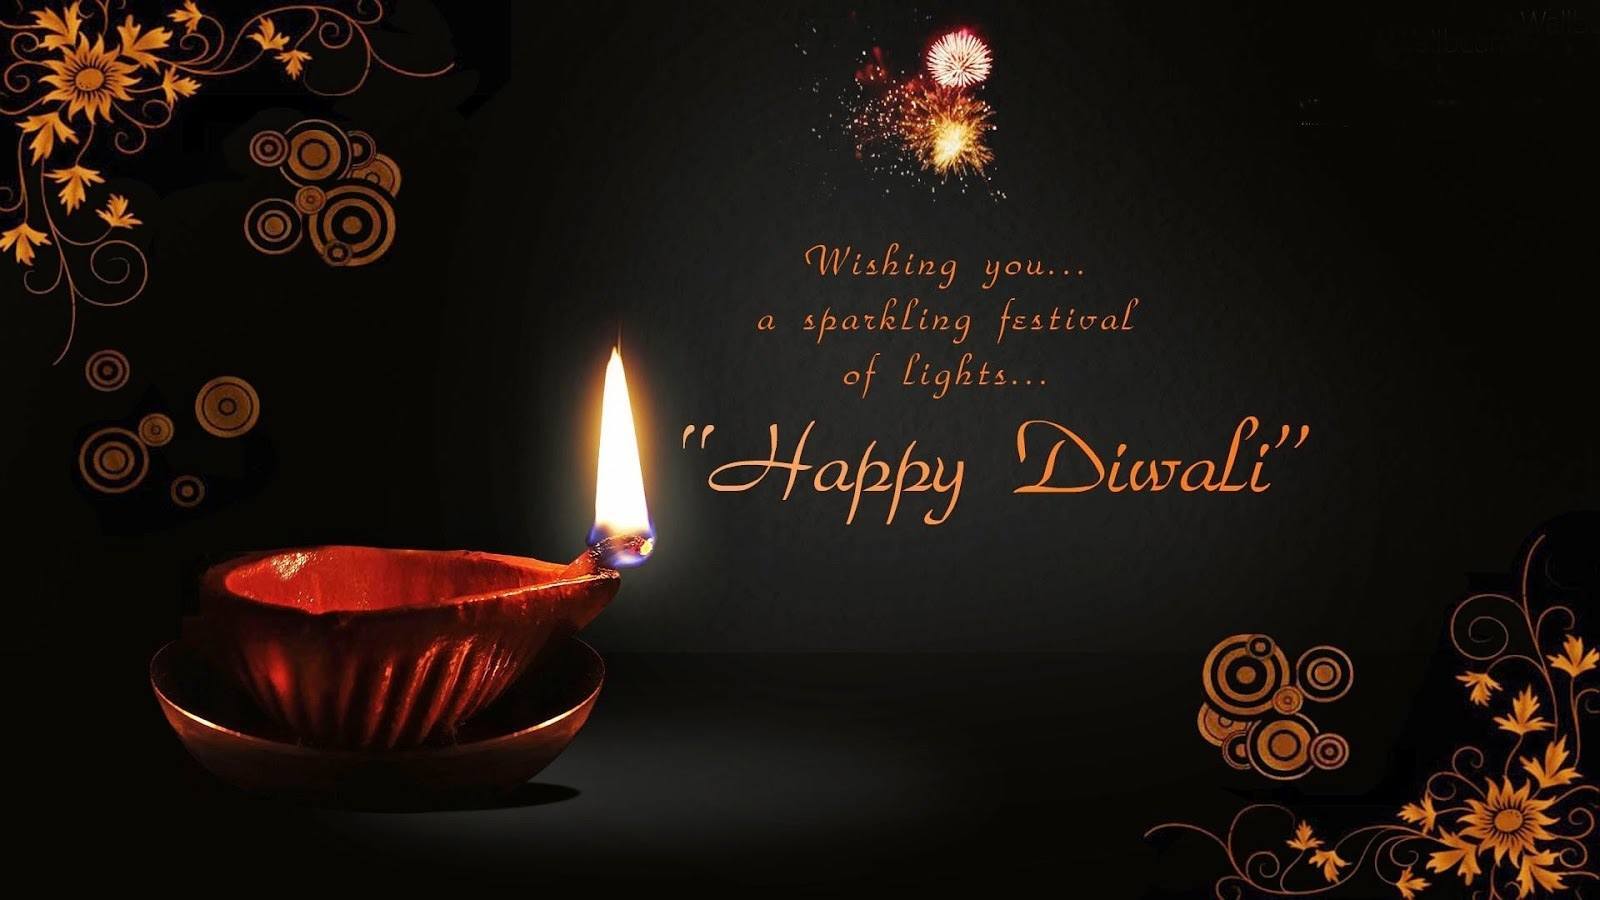 Happy Diwali 2017 Wishes